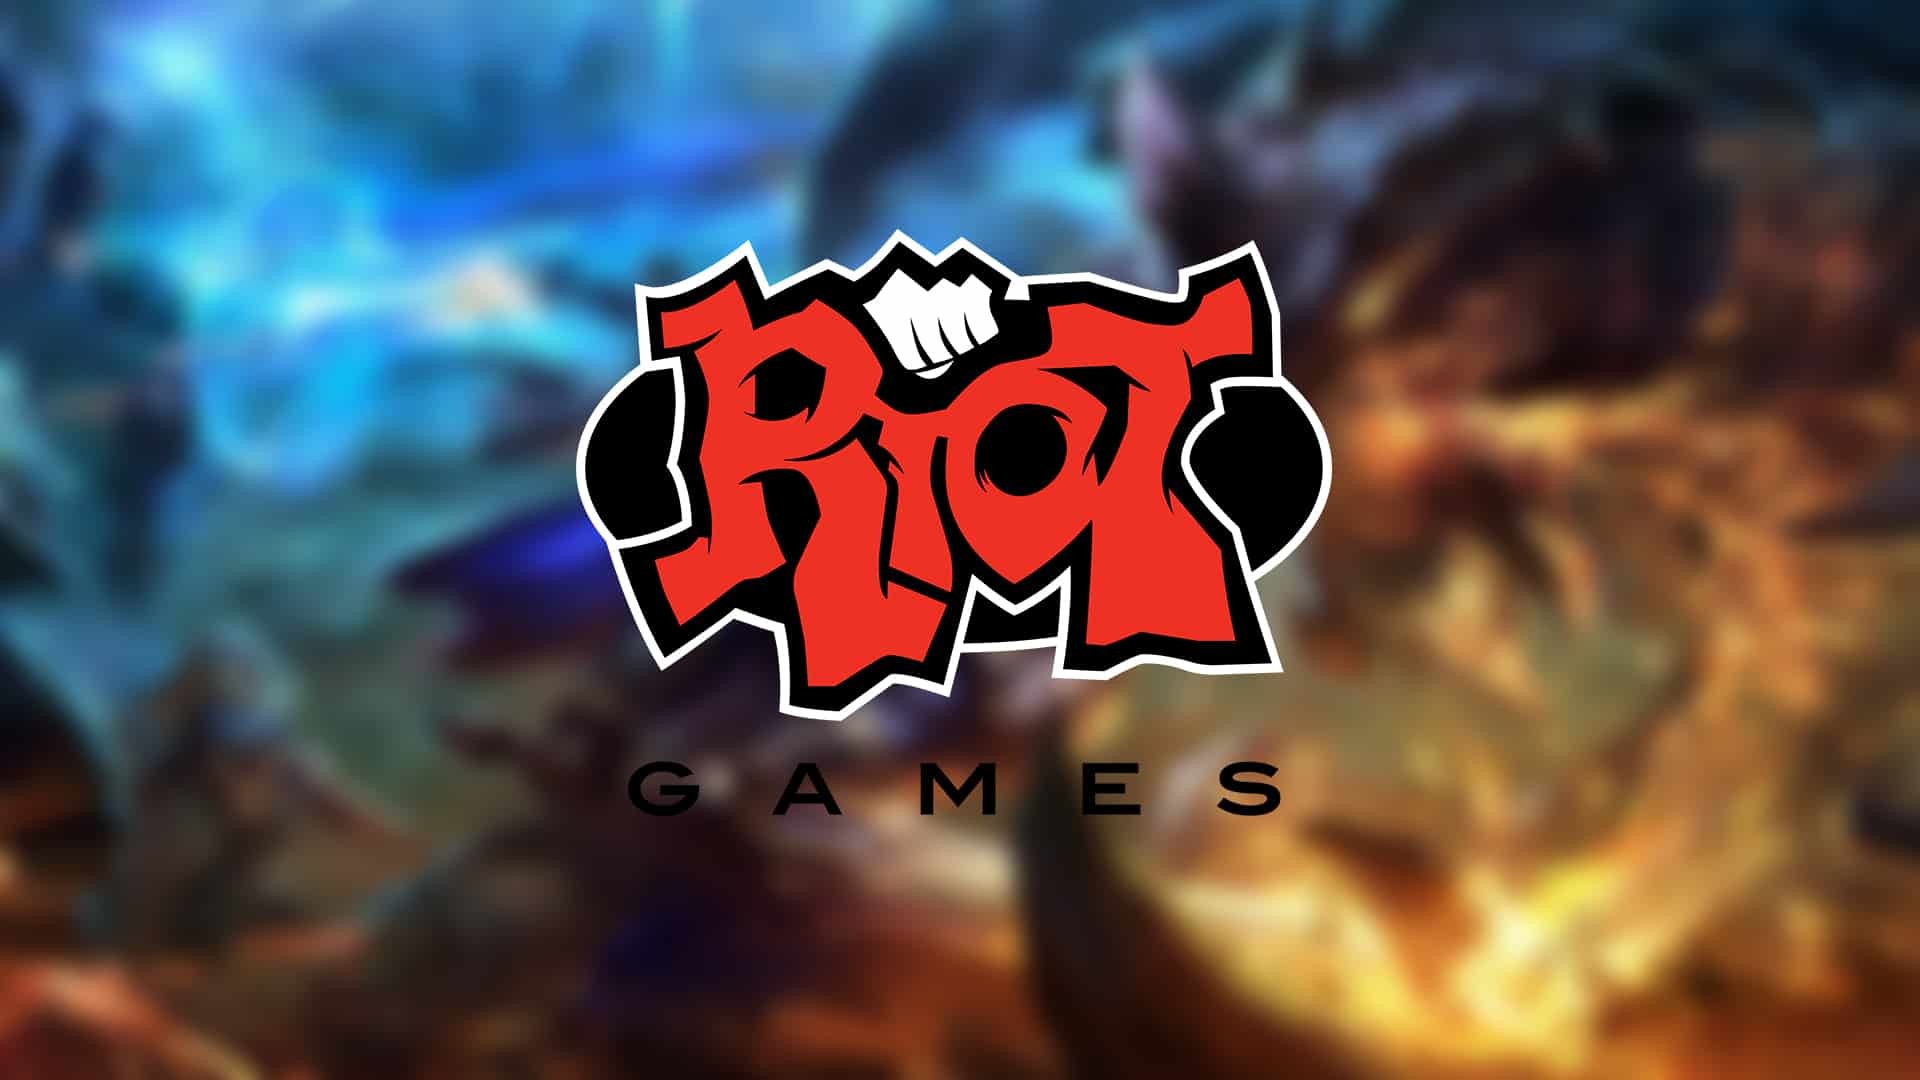 لعبة جديدة من رايوت جيمز رياضات الكترونية Riot games confirms new game league of legends fighting